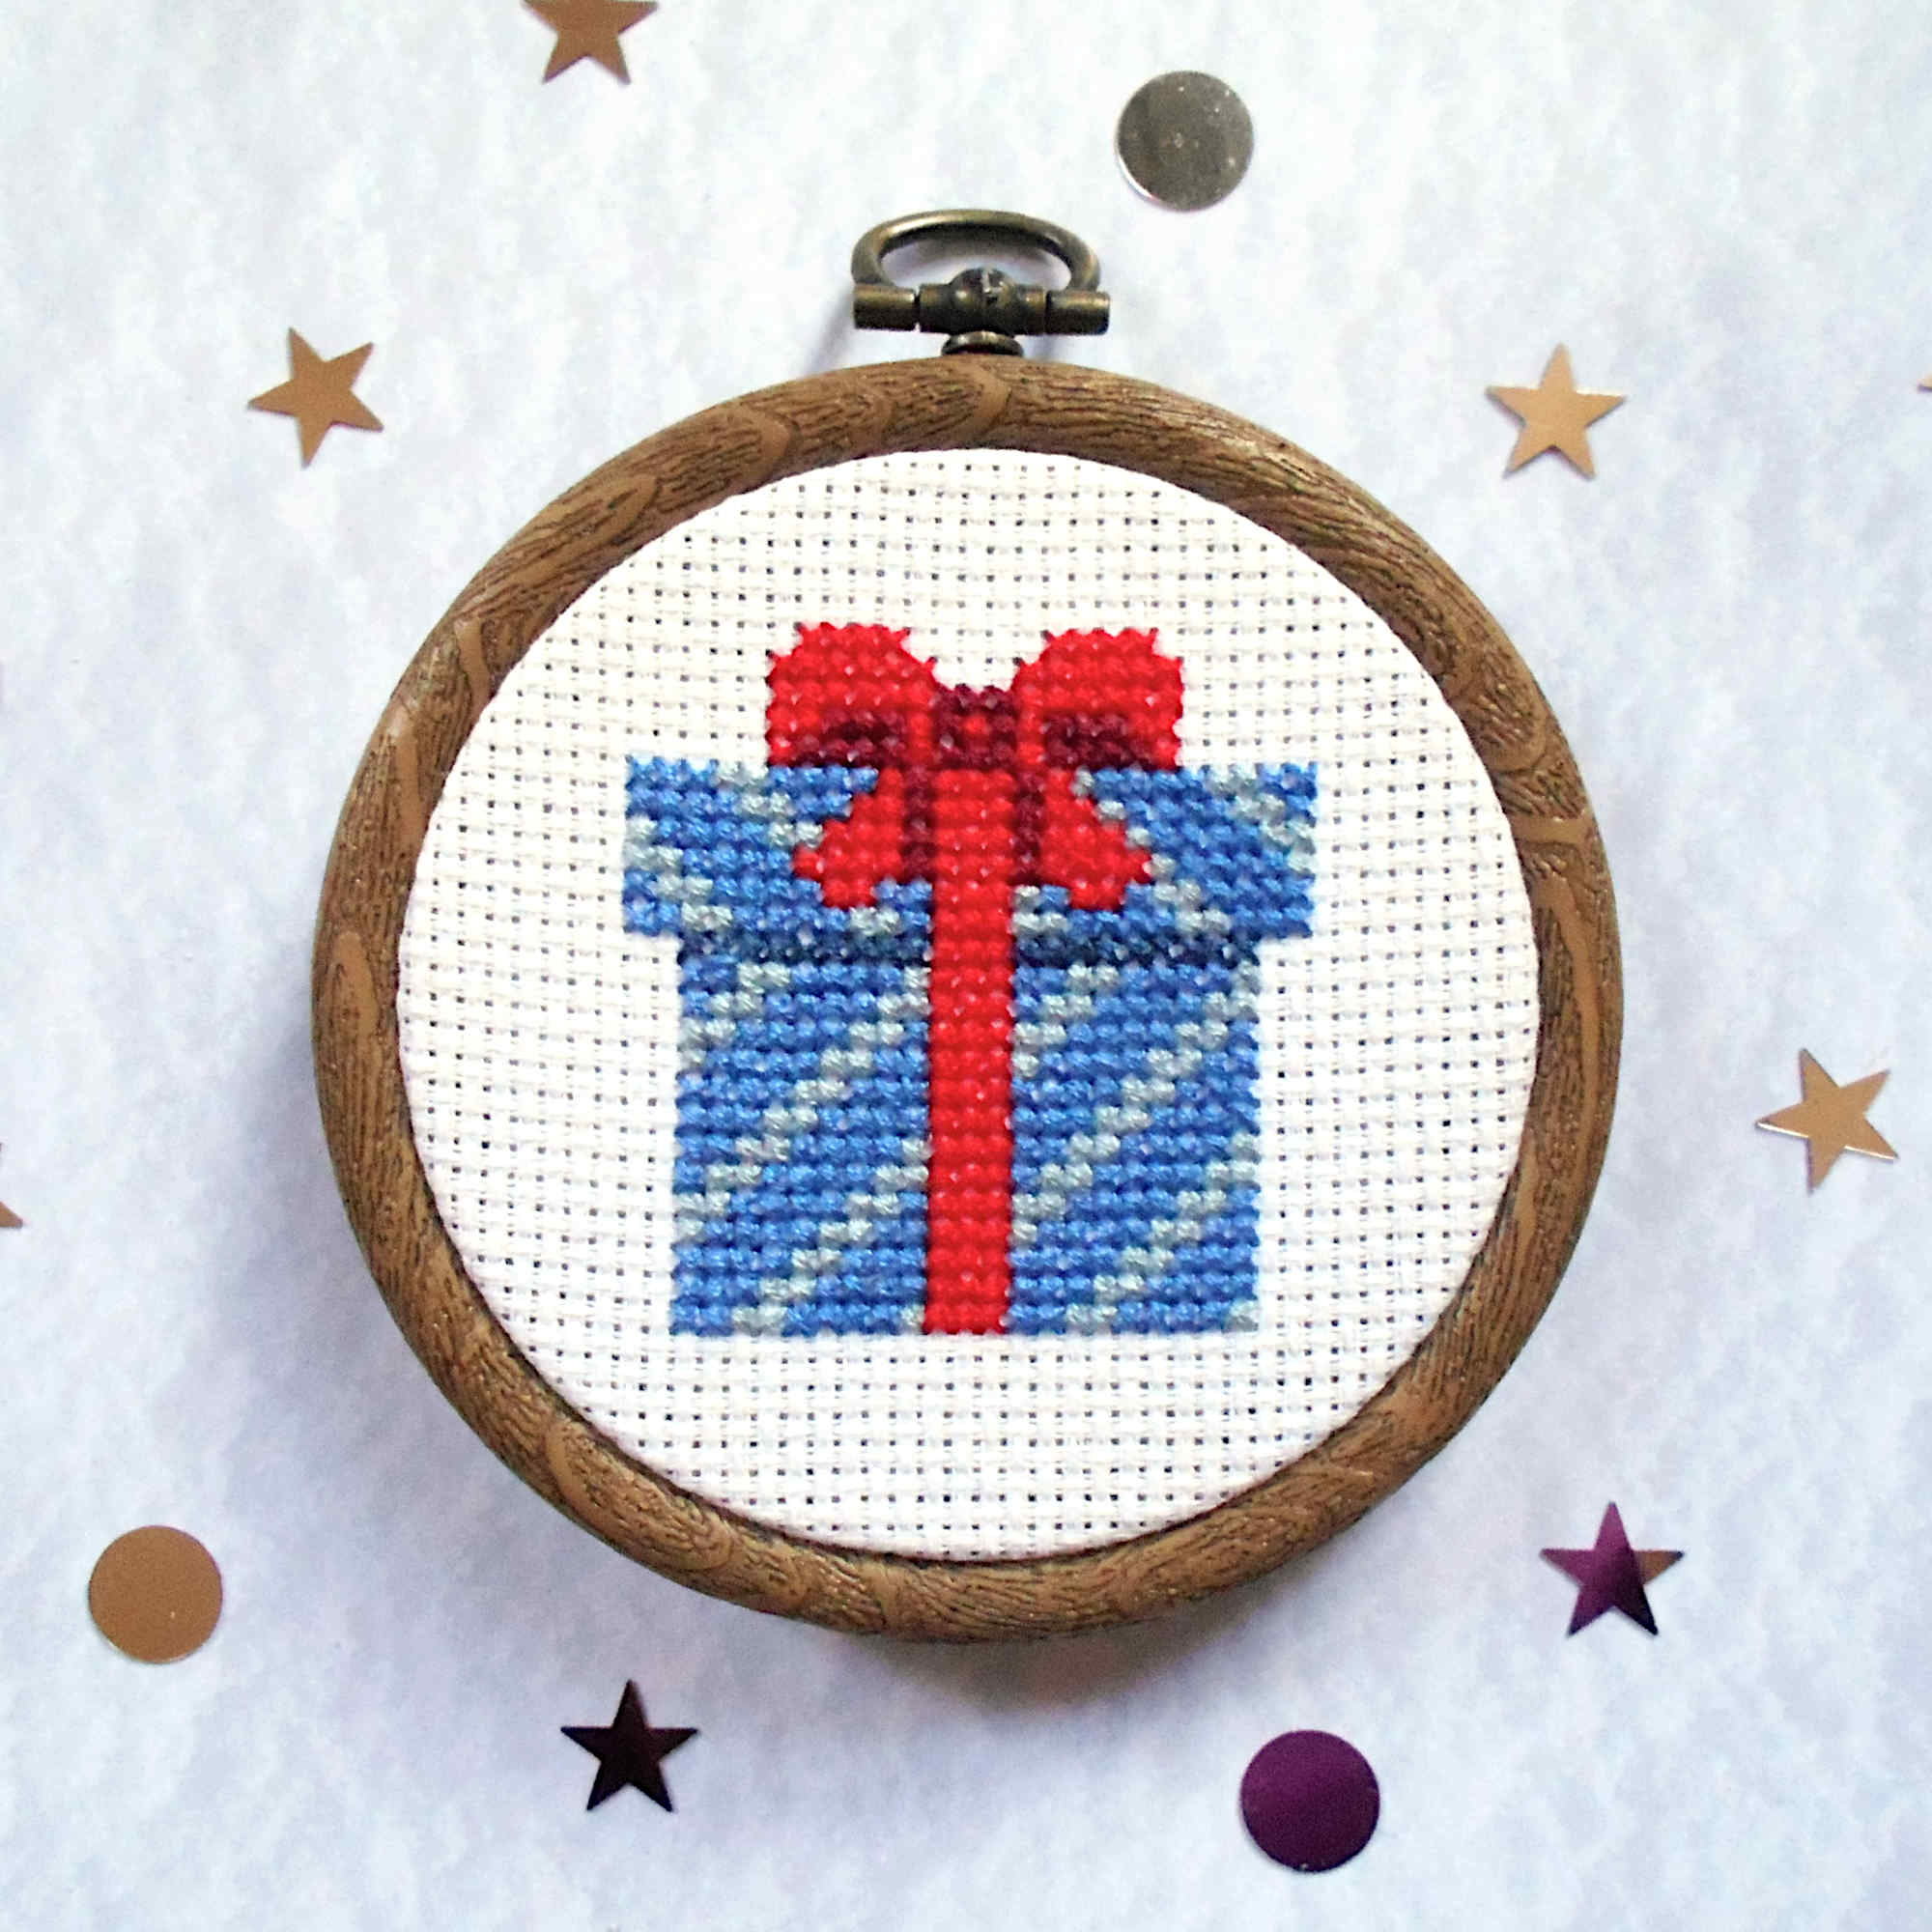 Easy, Fun Christmas Cross Stitch Kits, Festive Stitching | Knit Knot Krafts